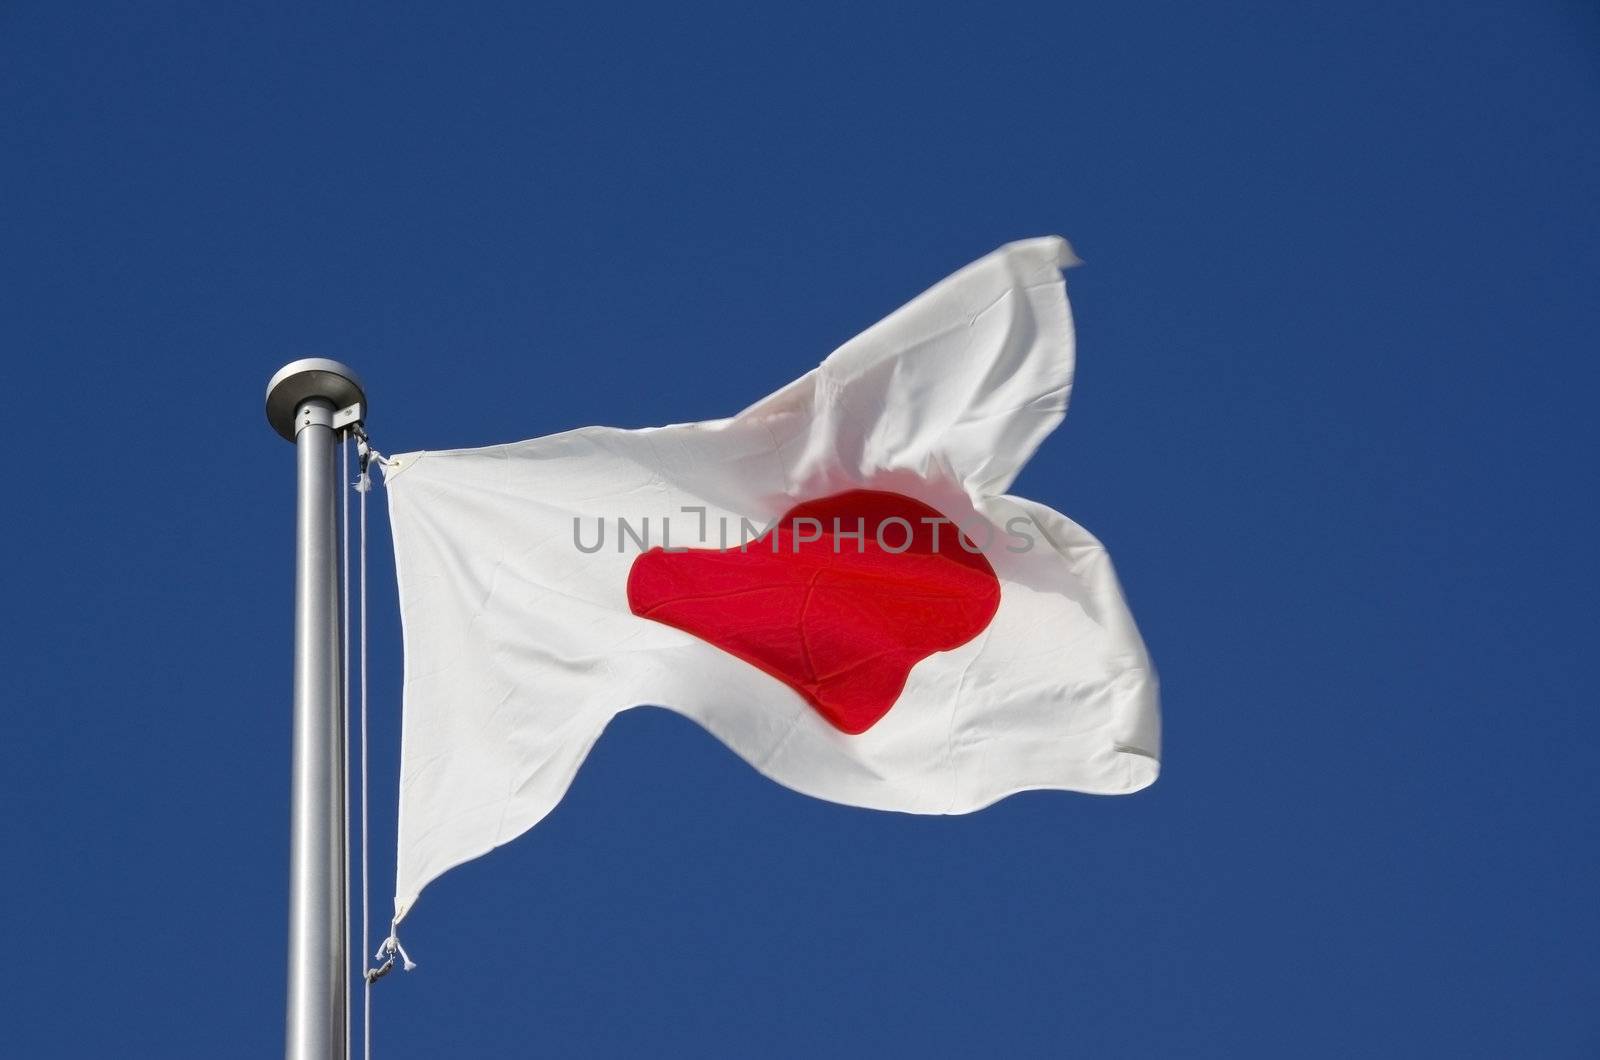 Japanese flag on flag pole against a blue sky